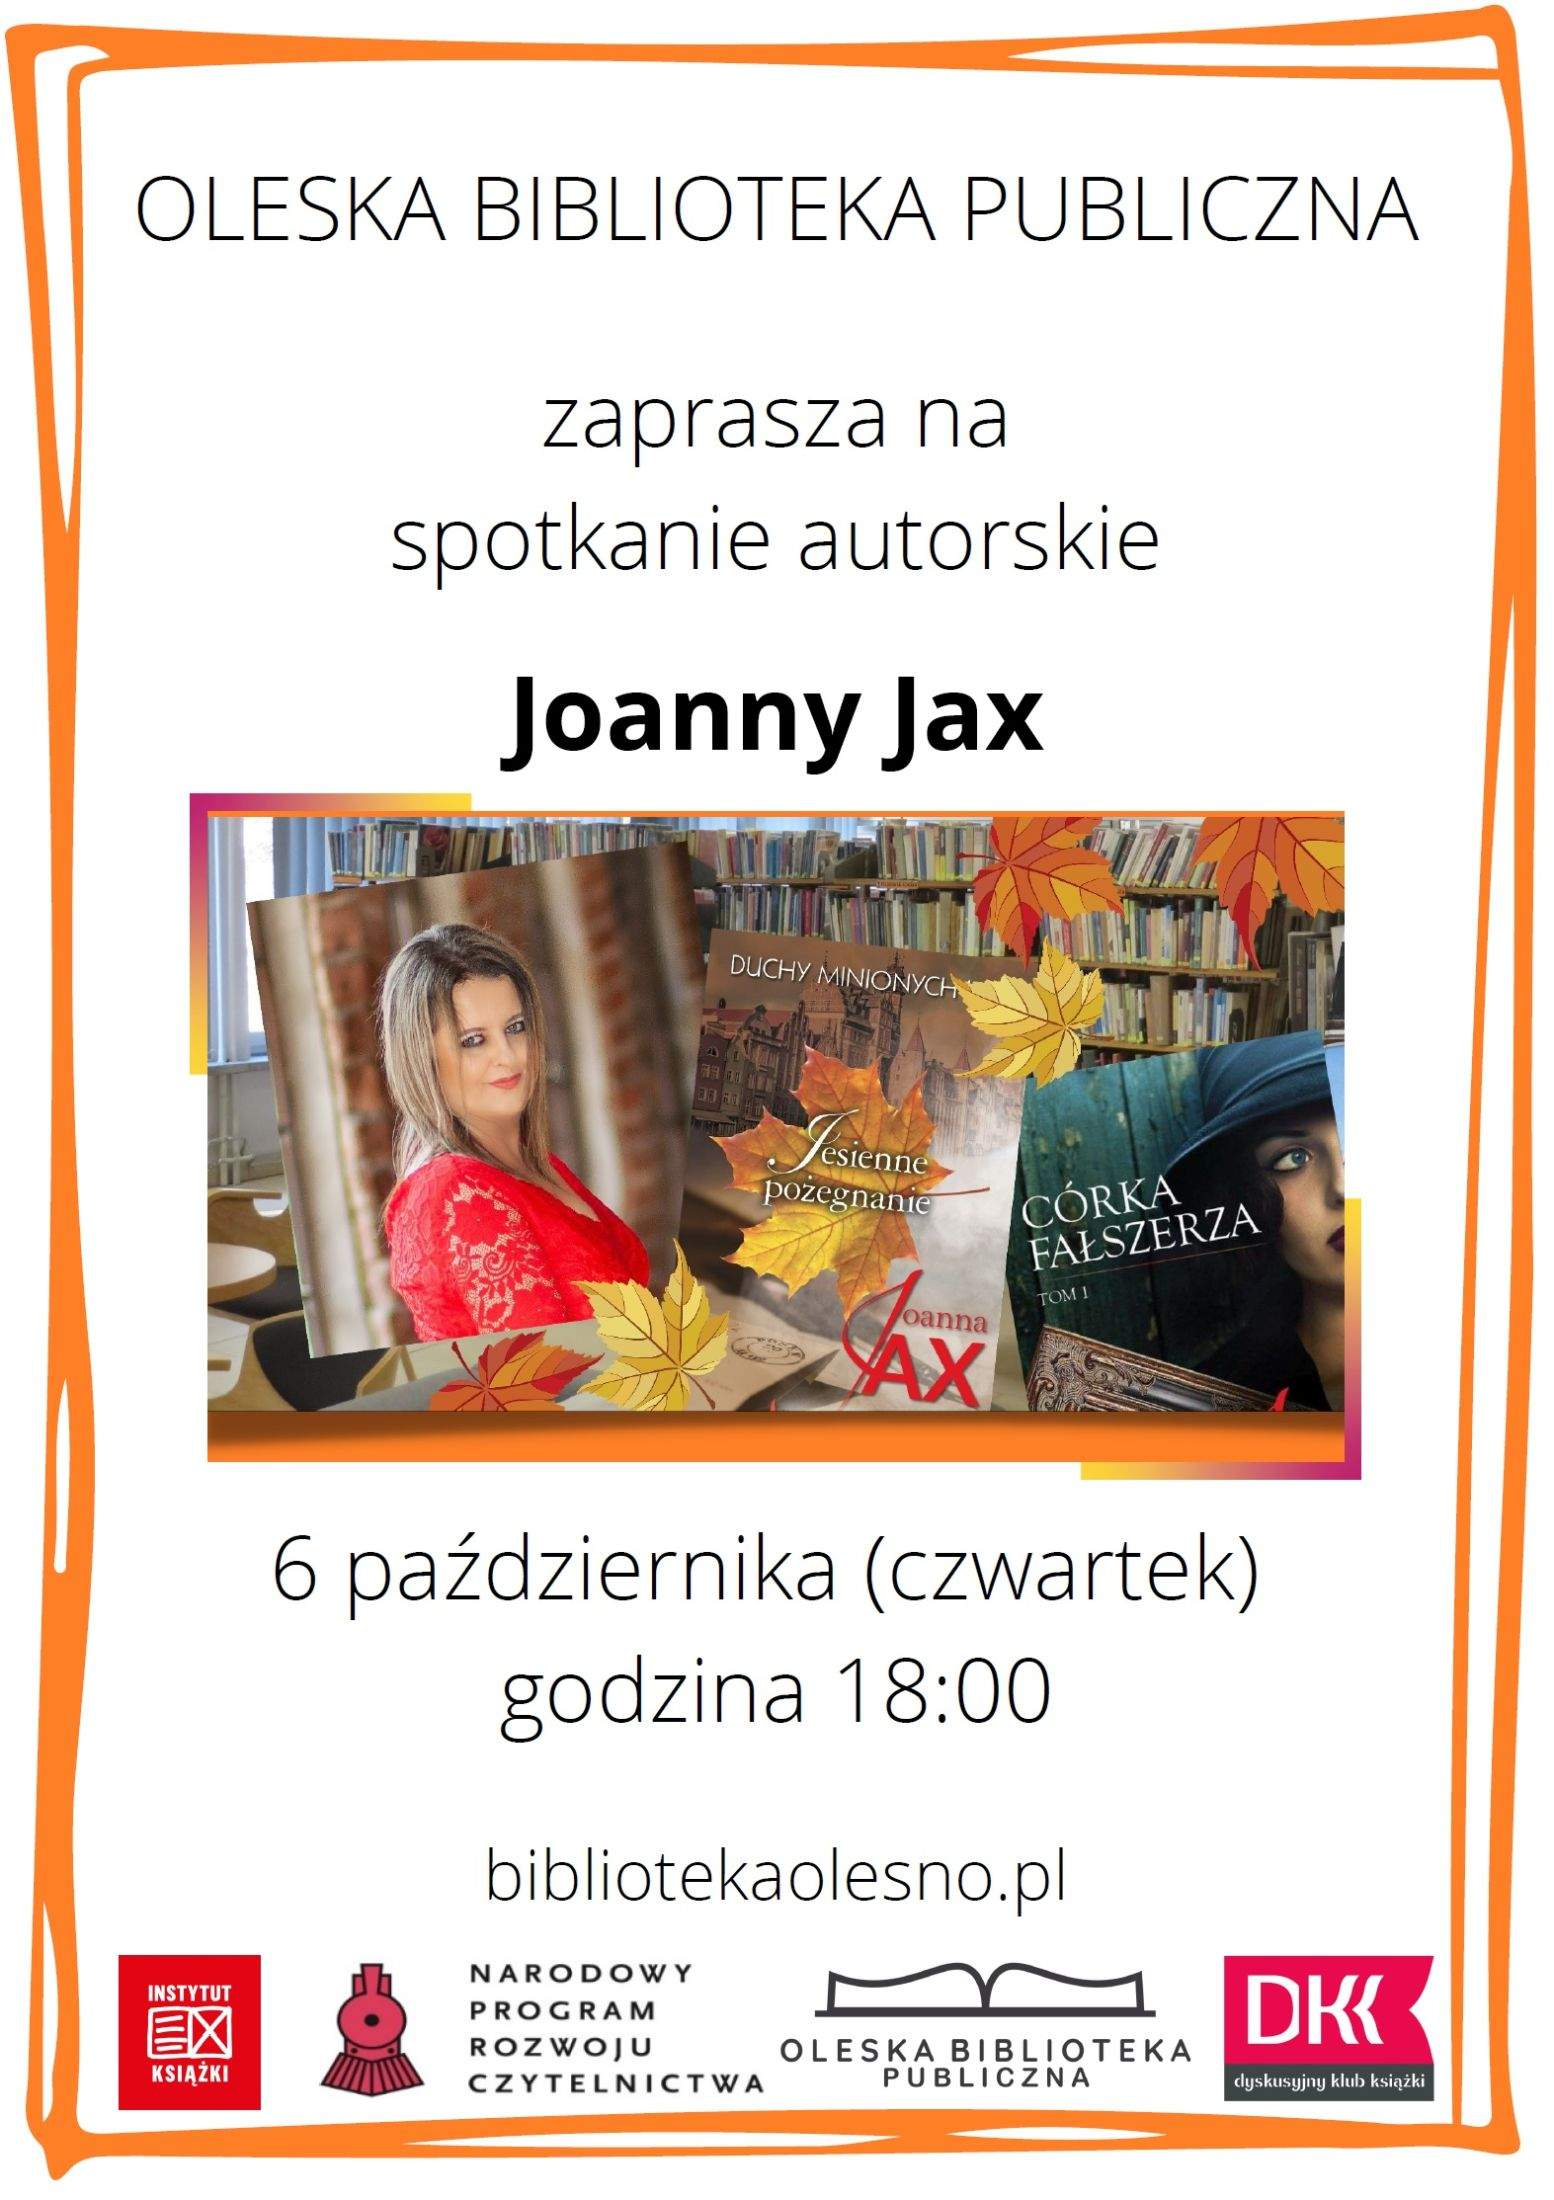 Spotkanie autorskie Joanny Jax